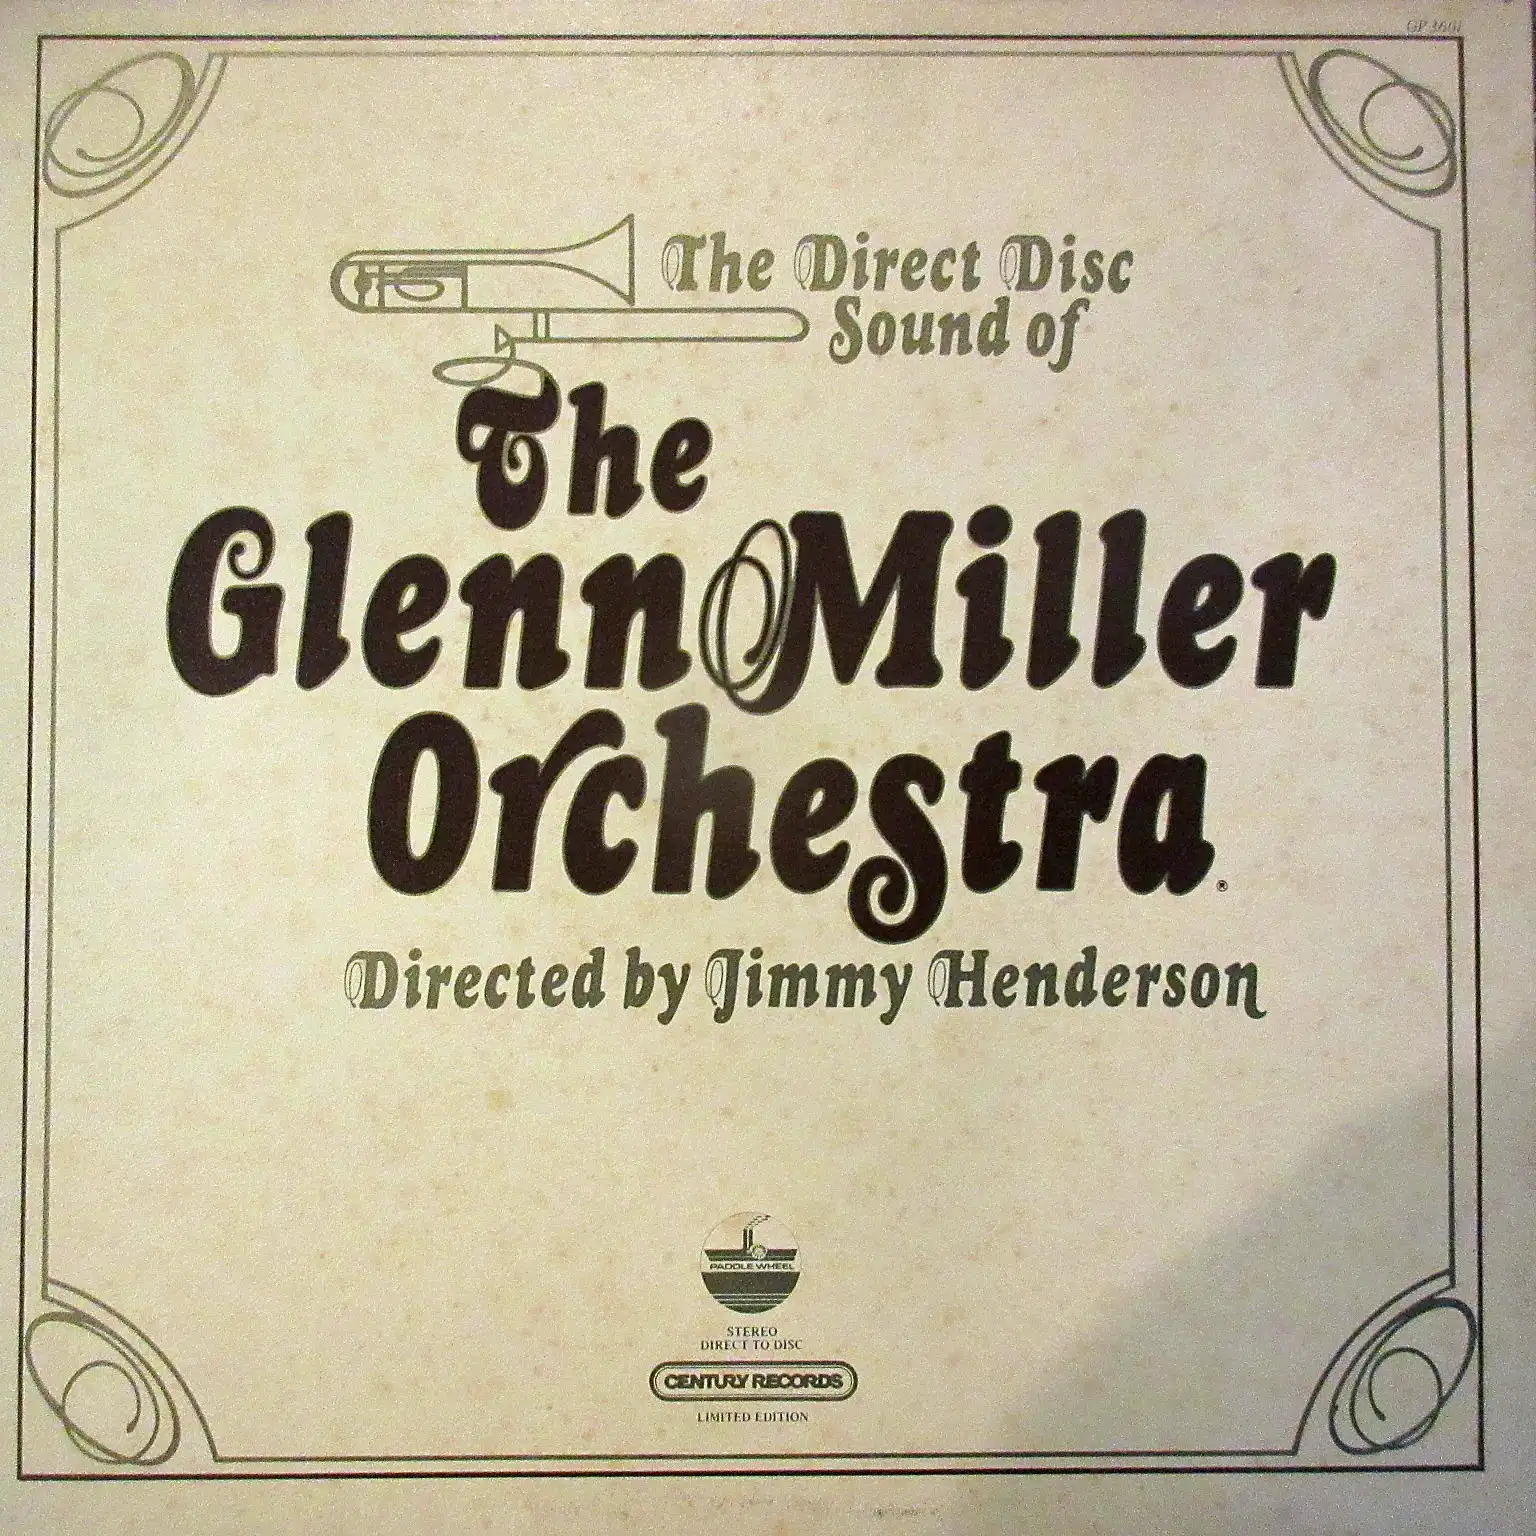 GLENN MILLER ORCHESTRA / DIRECT SOUND OF GLENN MILLER ORCHESTRA